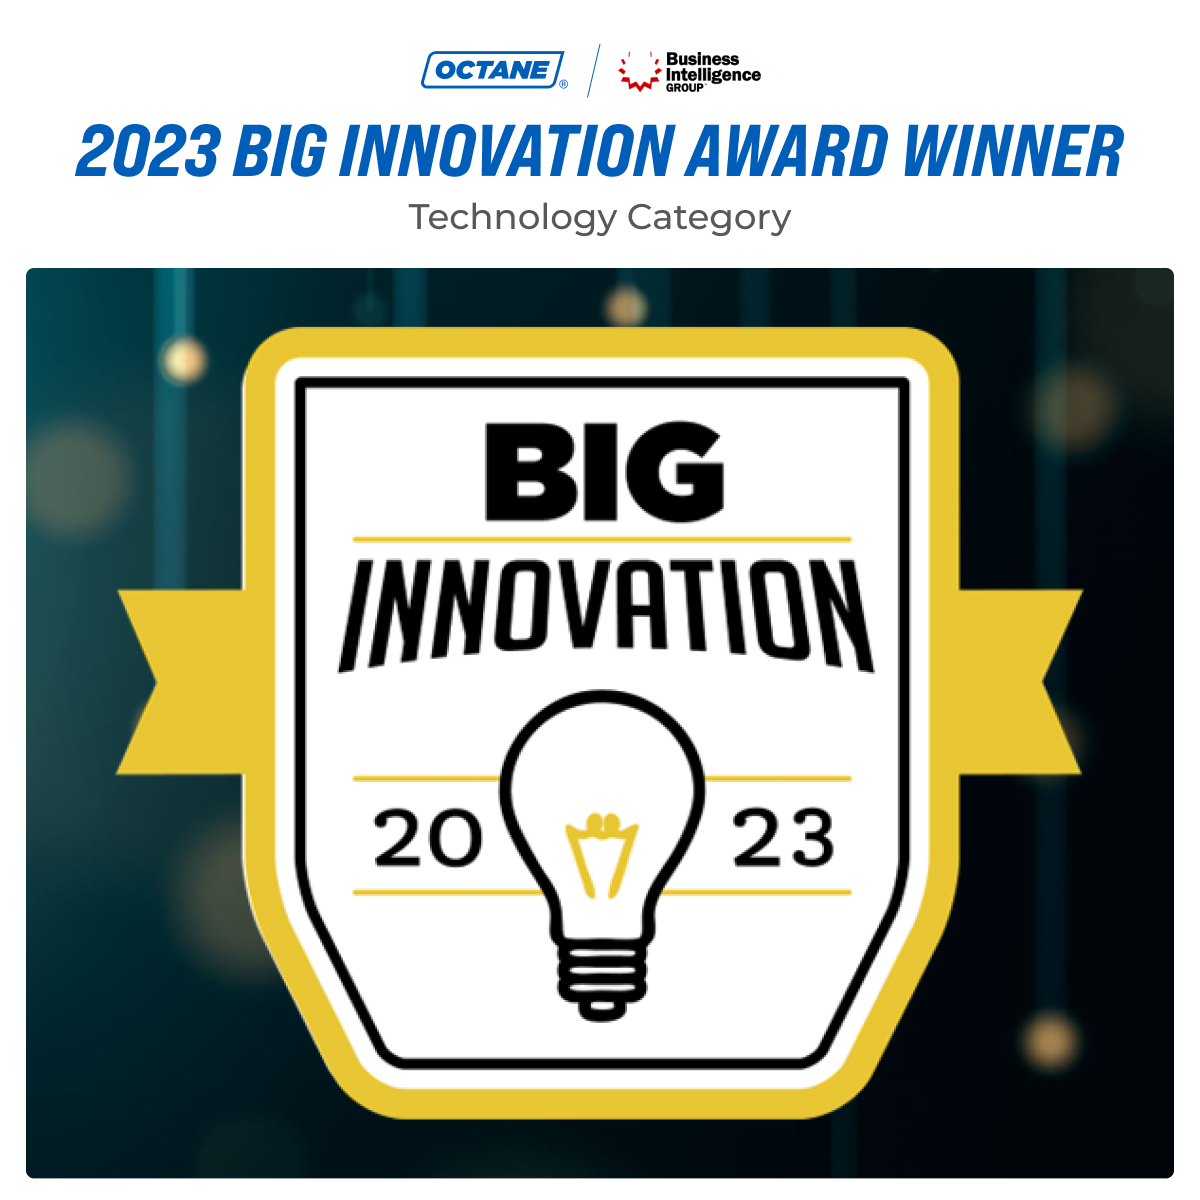 BIG Innovation Award - Technology Category